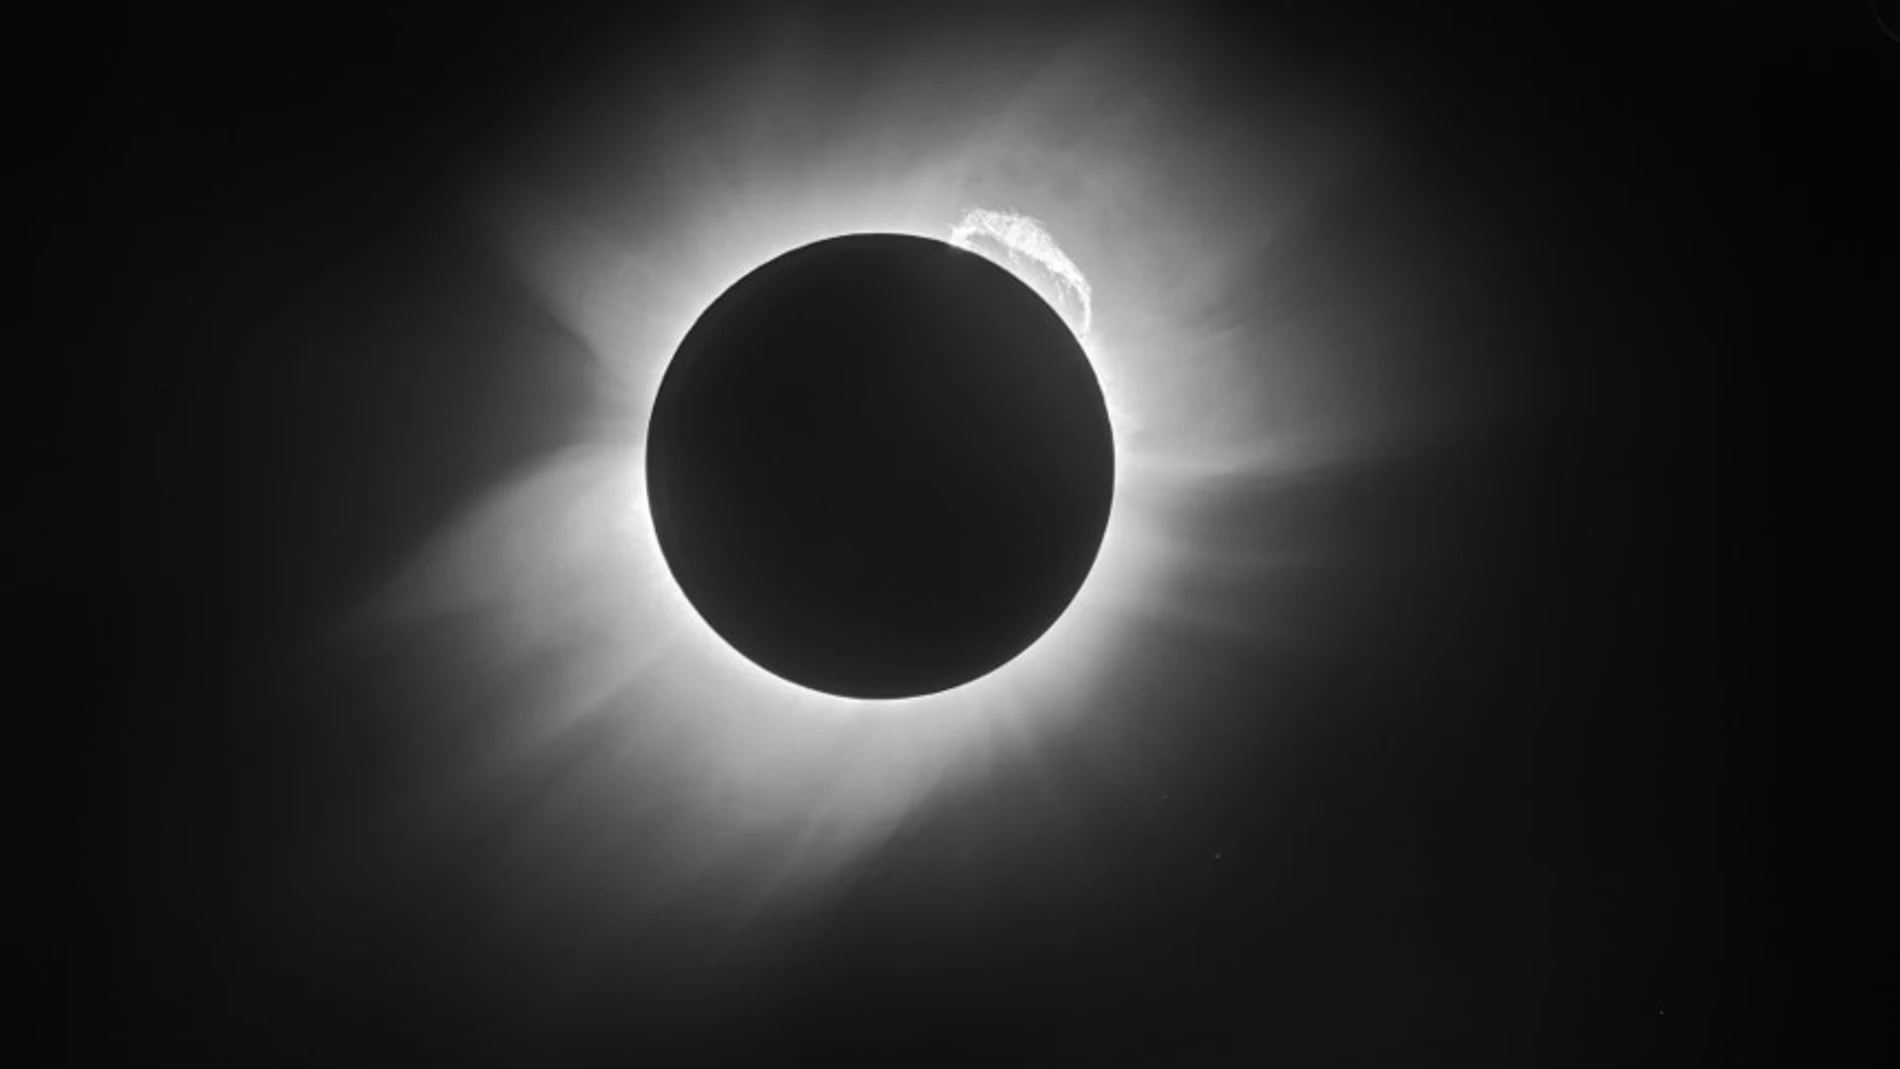 Eclipse fotografiado por Eddington y Crommelin modificada gracias a técnicas actuales de procesado de imagen para así mejorar la calidad